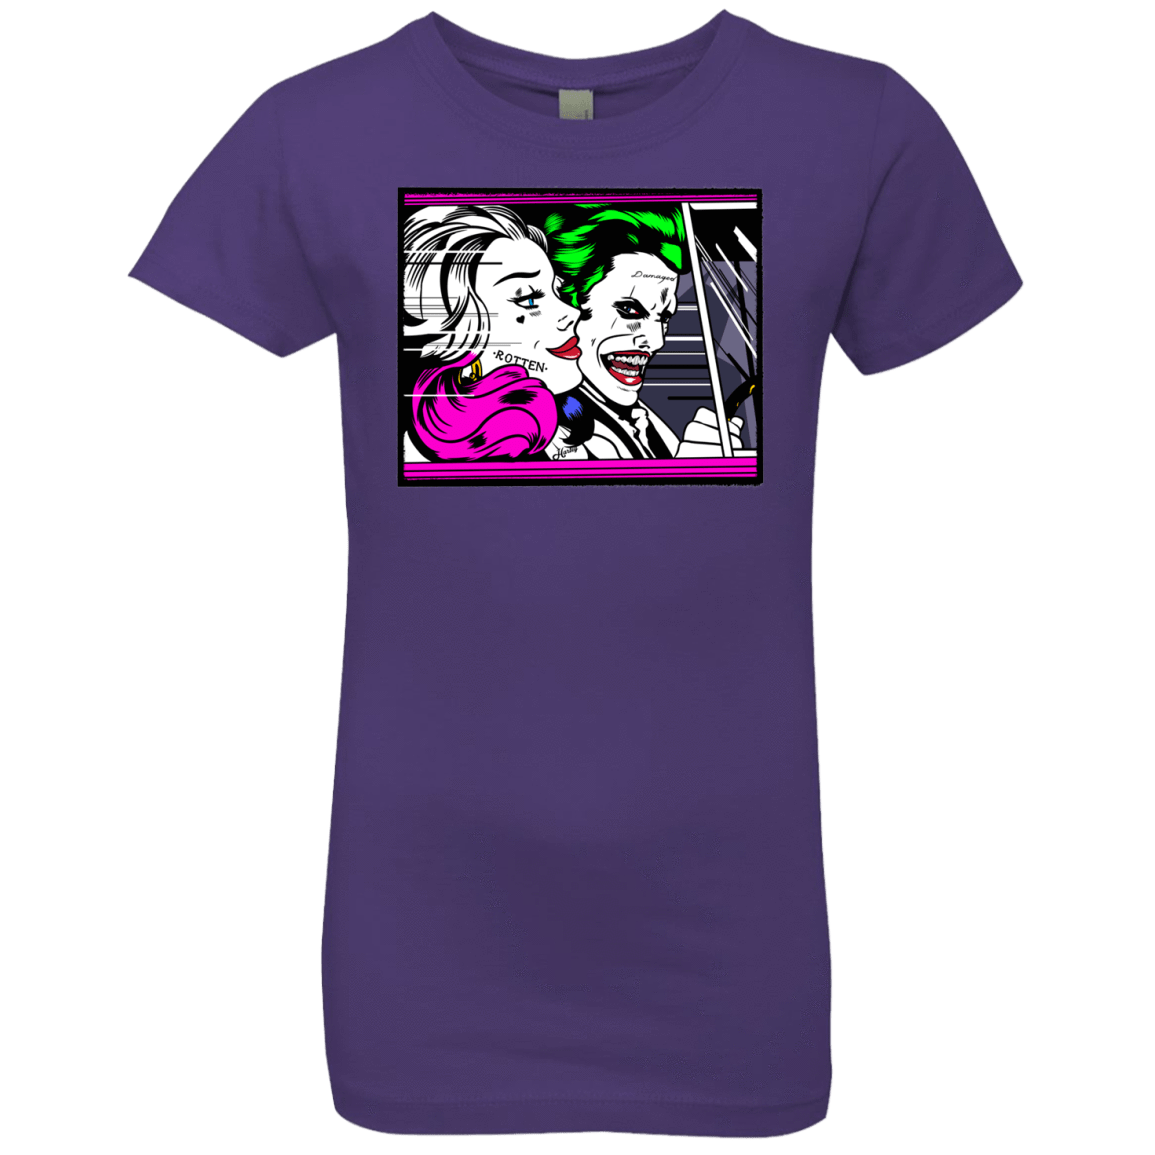 T-Shirts Purple Rush / YXS In The Jokecar Girls Premium T-Shirt